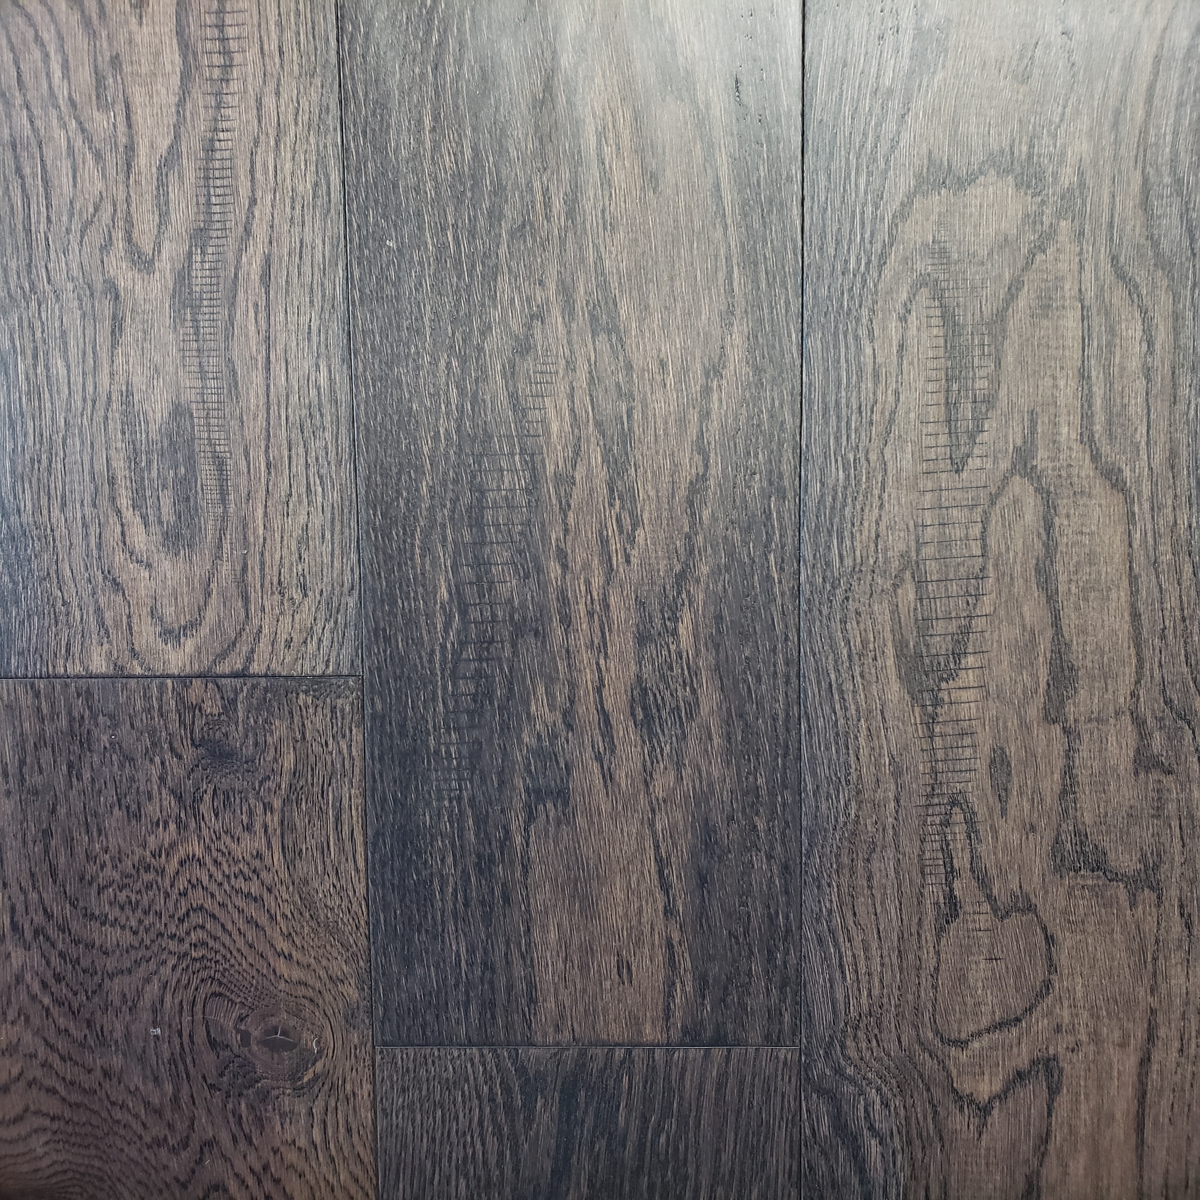 Distressed Engineered Hardwood Flooring, Distressed Hardwood Flooring Canada